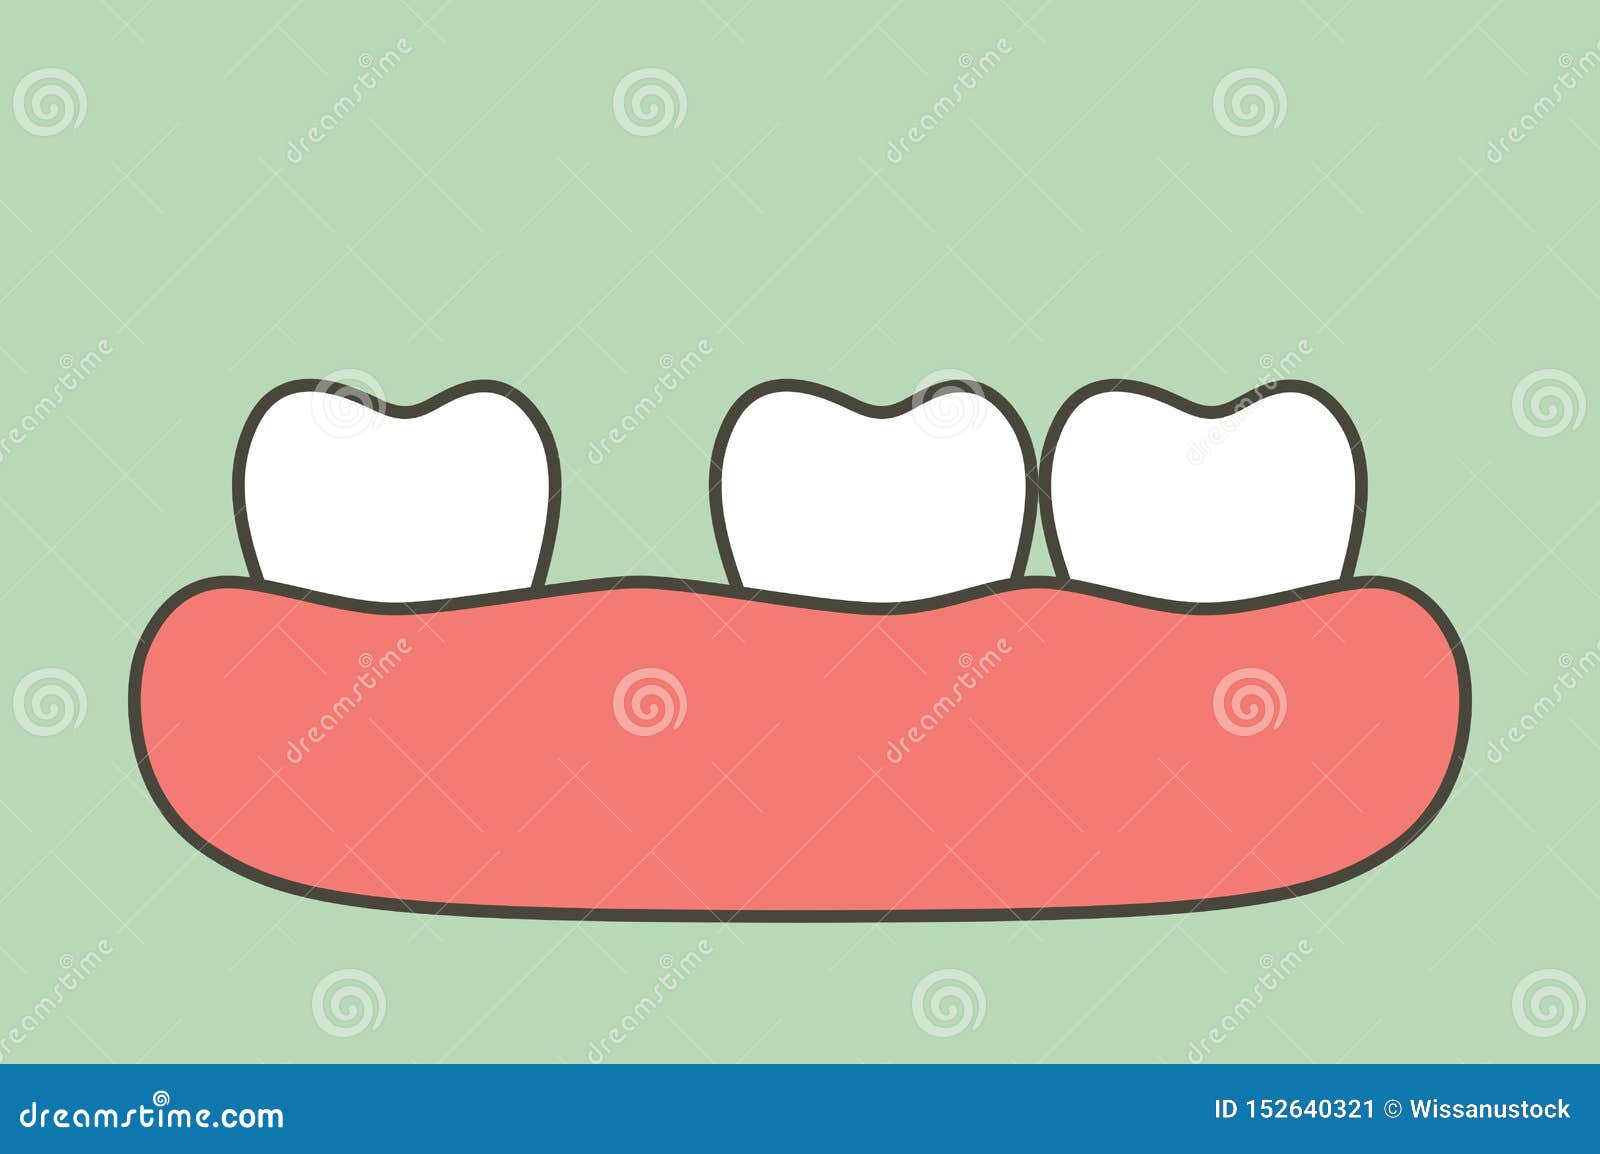 Teeth Gap Cartoon Stock Illustrations – 111 Teeth Gap Cartoon Stock  Illustrations, Vectors & Clipart - Dreamstime